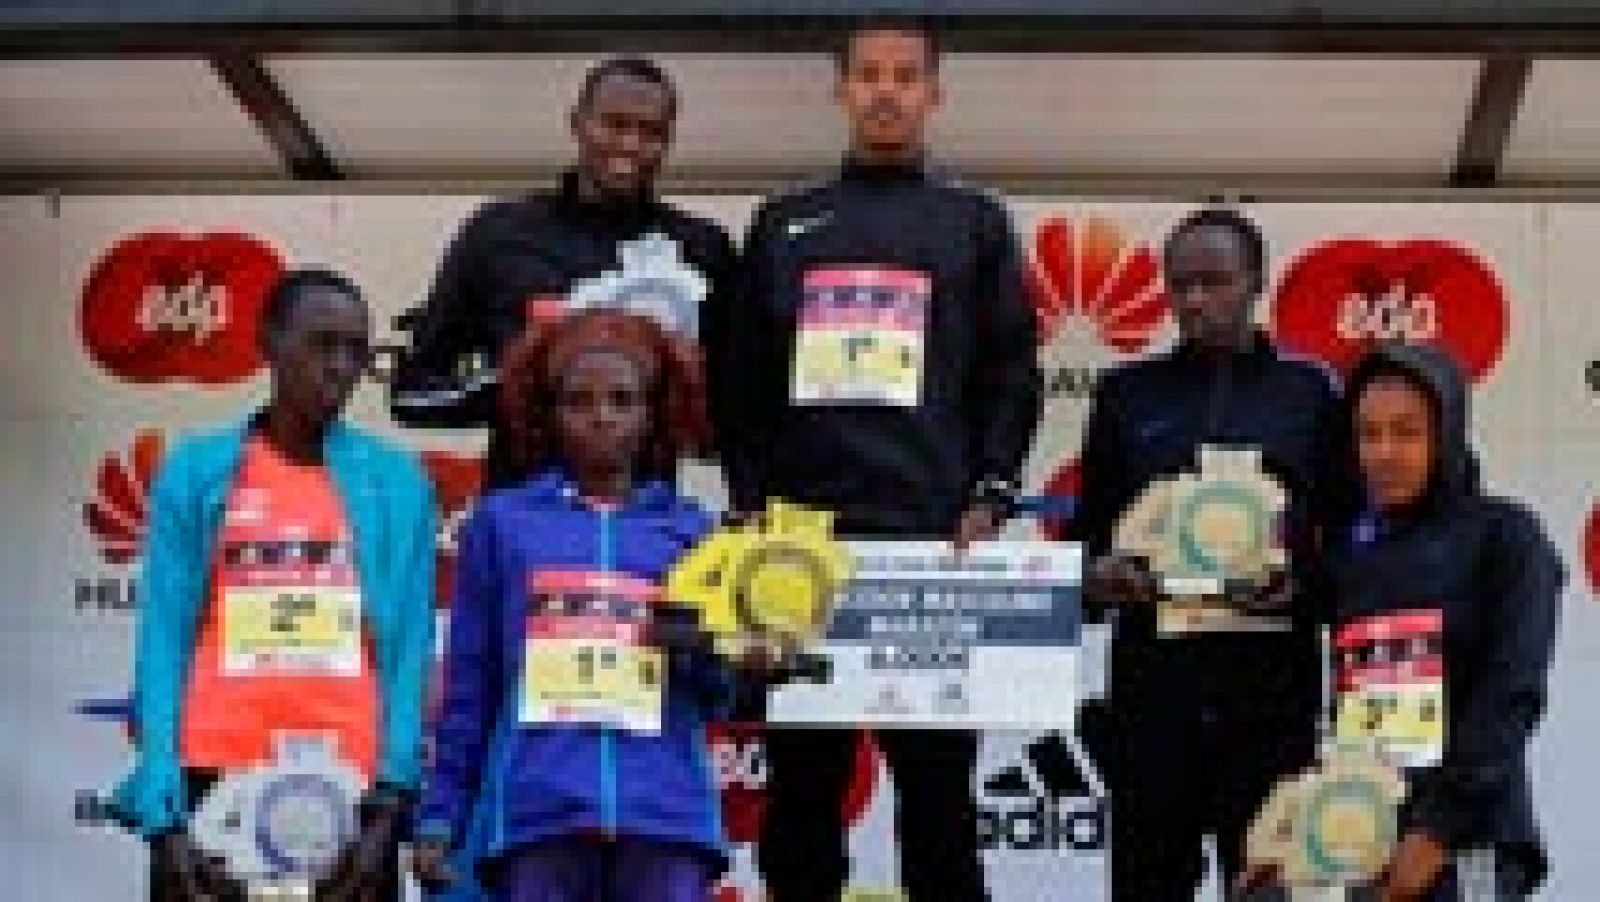 Bonsa Dida, de 22 años, se convirtió con una marca de 2h10:16 en el segundo etíope que gana el maratón de Madrid, diecinueve años después de Fekadu Bekele, y la keniana Elizabeth Rumokol (2h33:55) acentuó el perfil africano de la carrera que en su 40 aniversario estrenó Etiqueta de Oro, la máxima categoría de la IAAF.